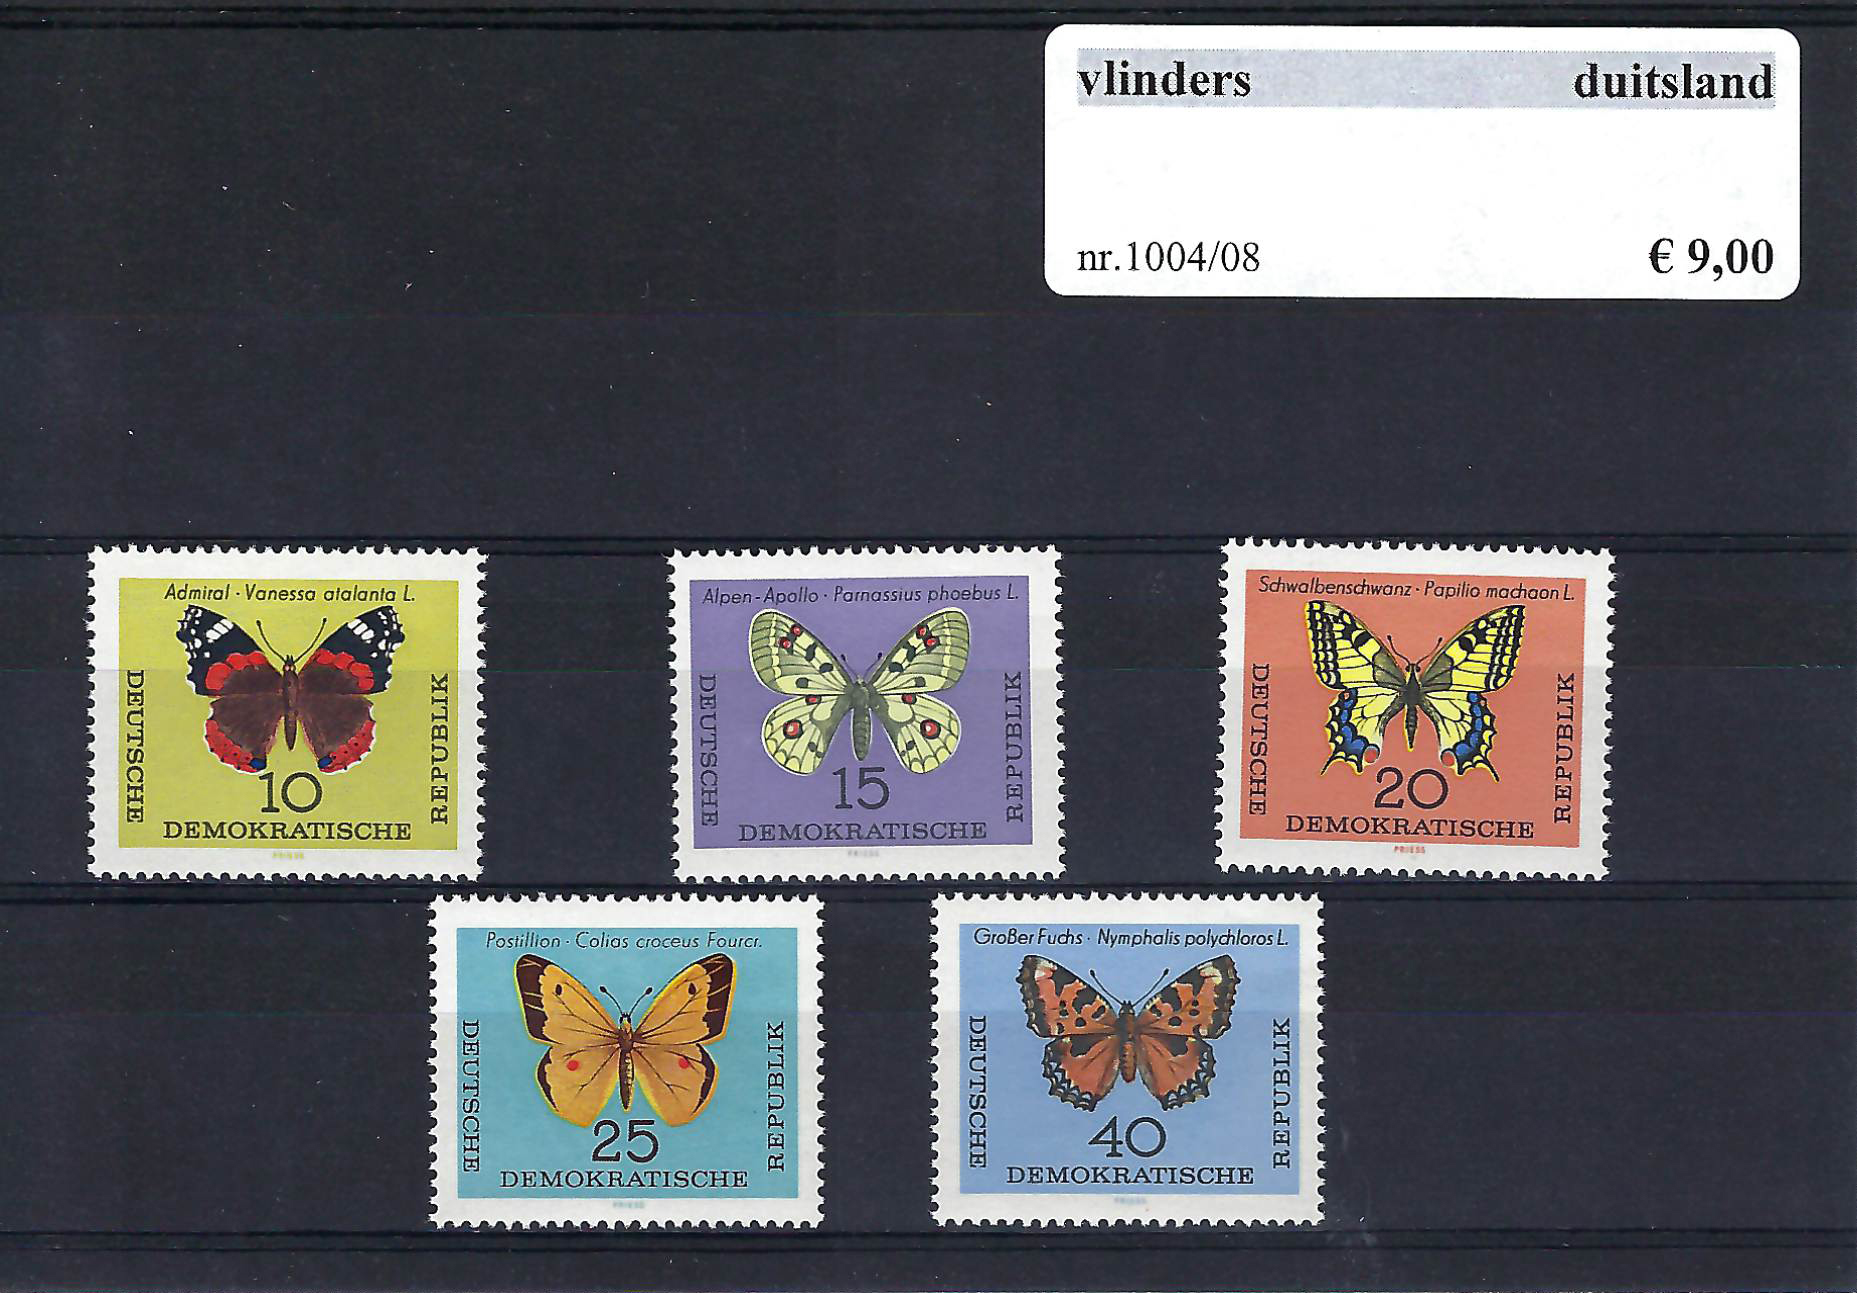 Themazegels Vlinders Duitsland nr. 1004/1008